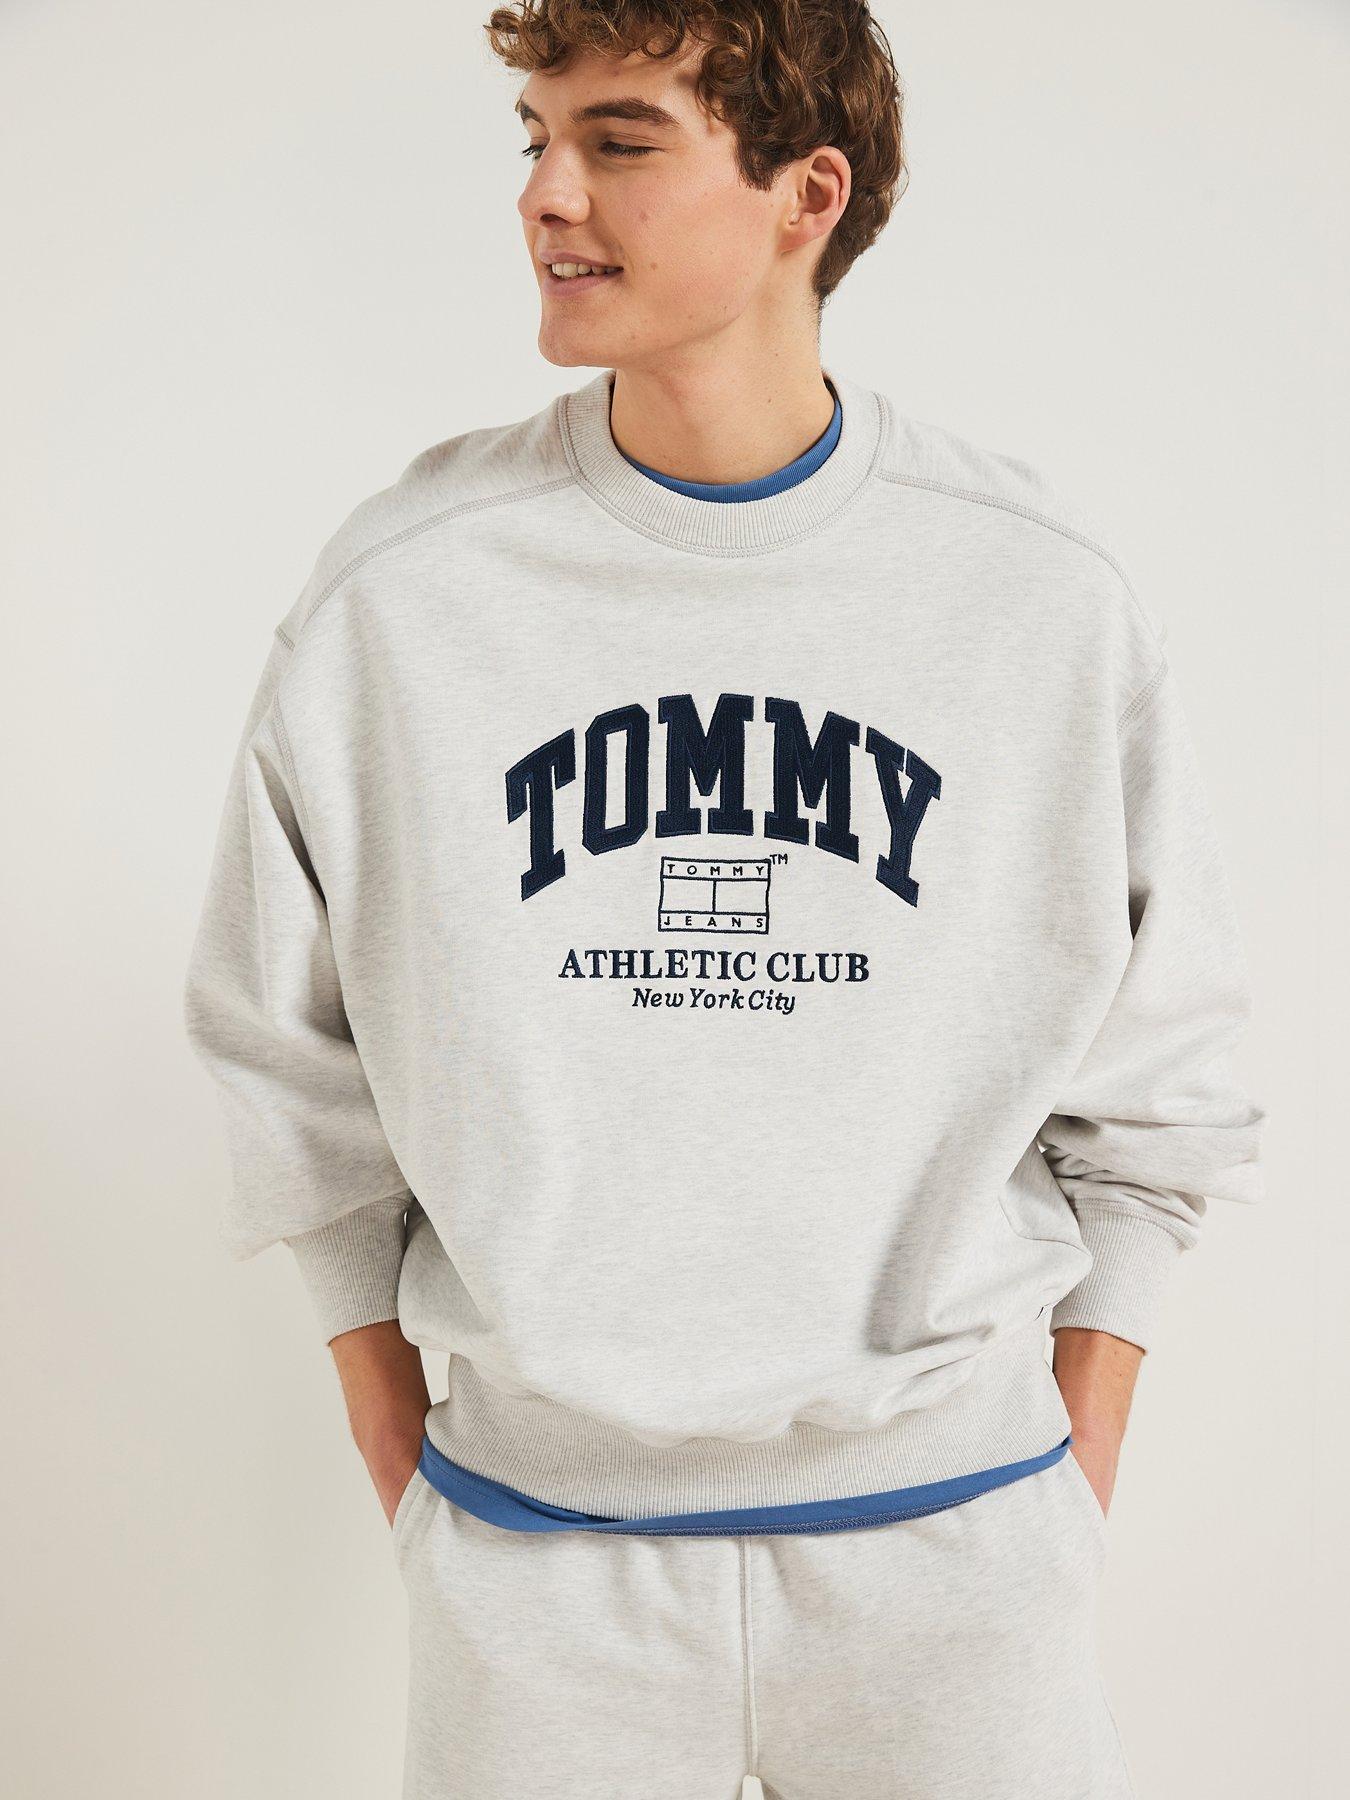 Tommy Hilfiger Peach Pullover Sweatshirt Sz M Collegiate Causal Designer